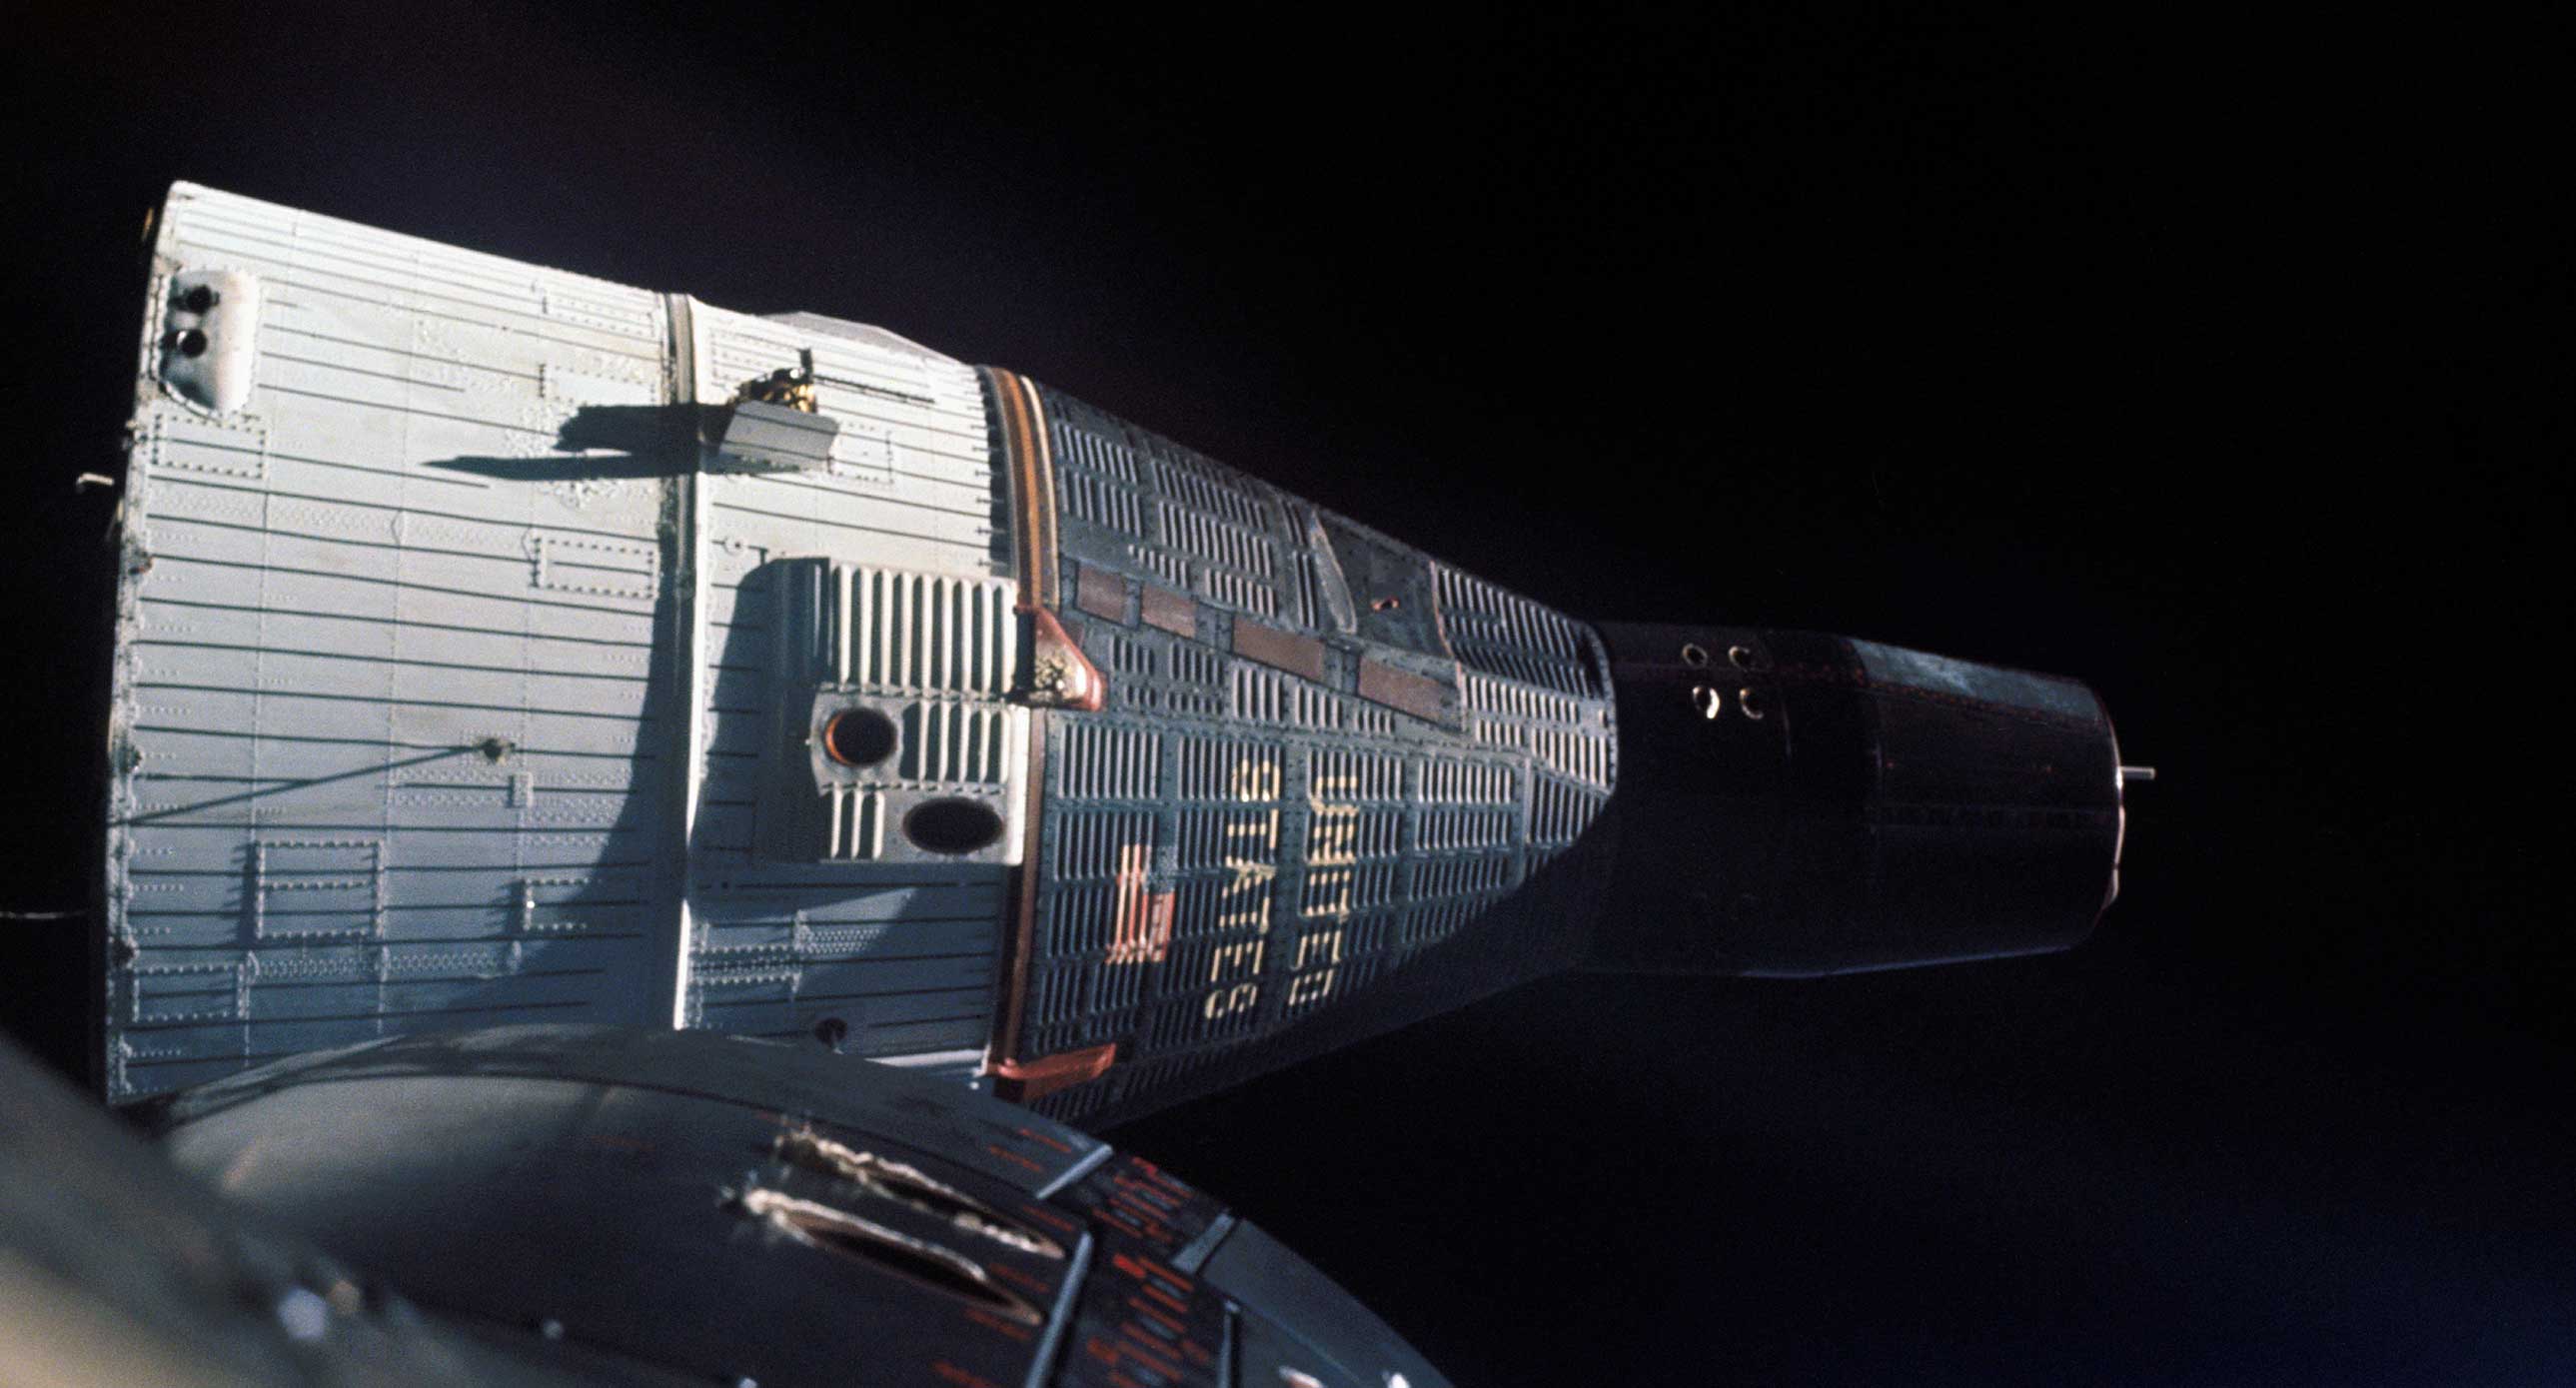 Shuttle Orbiter in Space